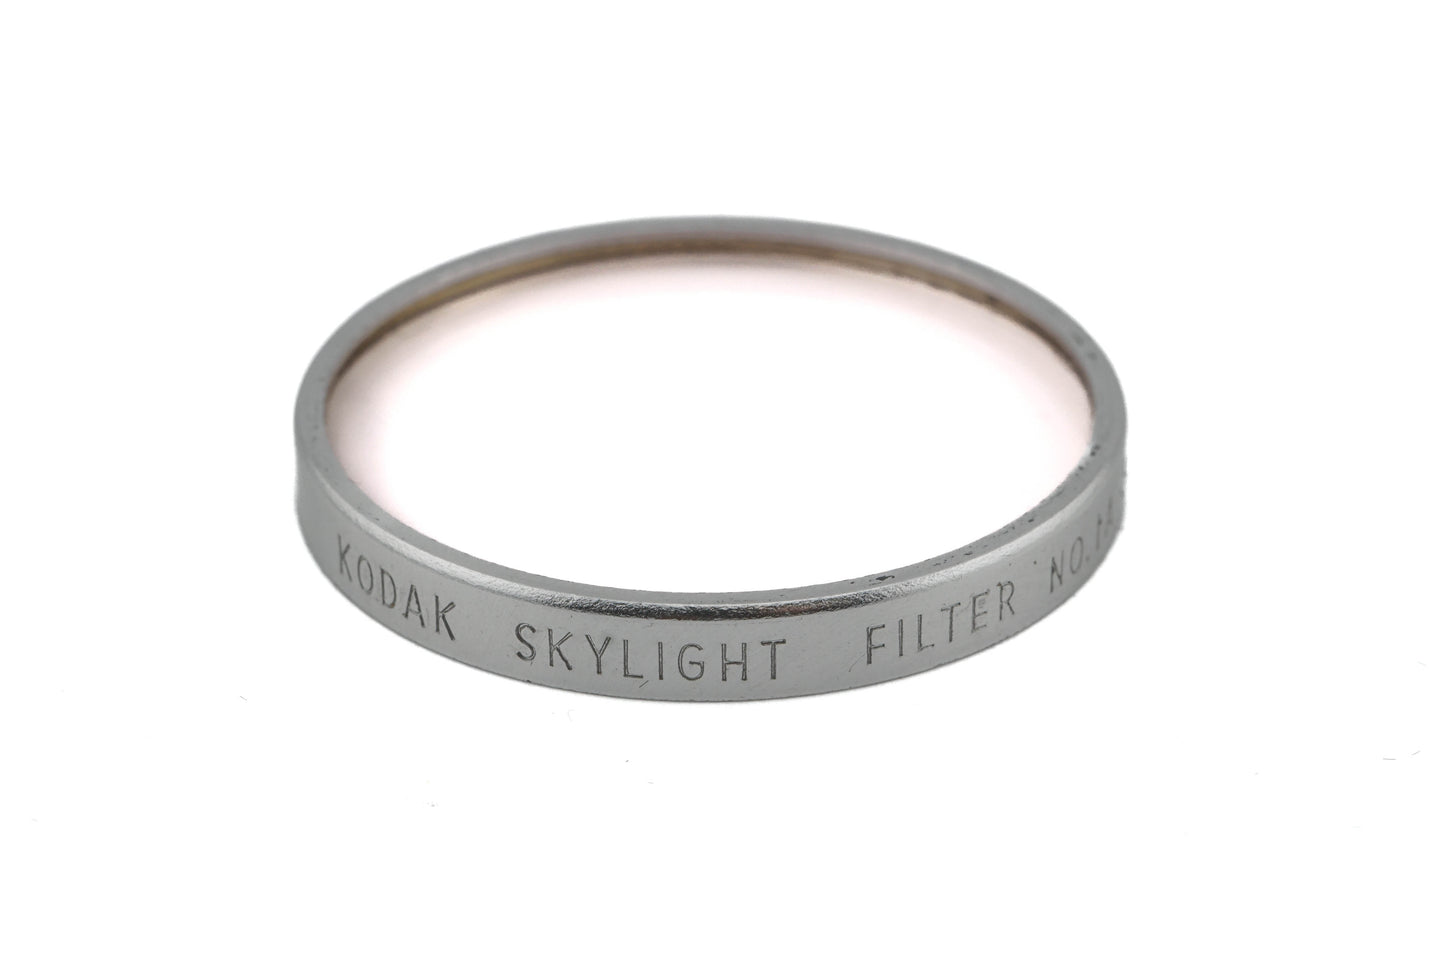 Kodak Series 6 Skylight Filter 1A + 40.5mm Series 6 Filter Retaining Ring